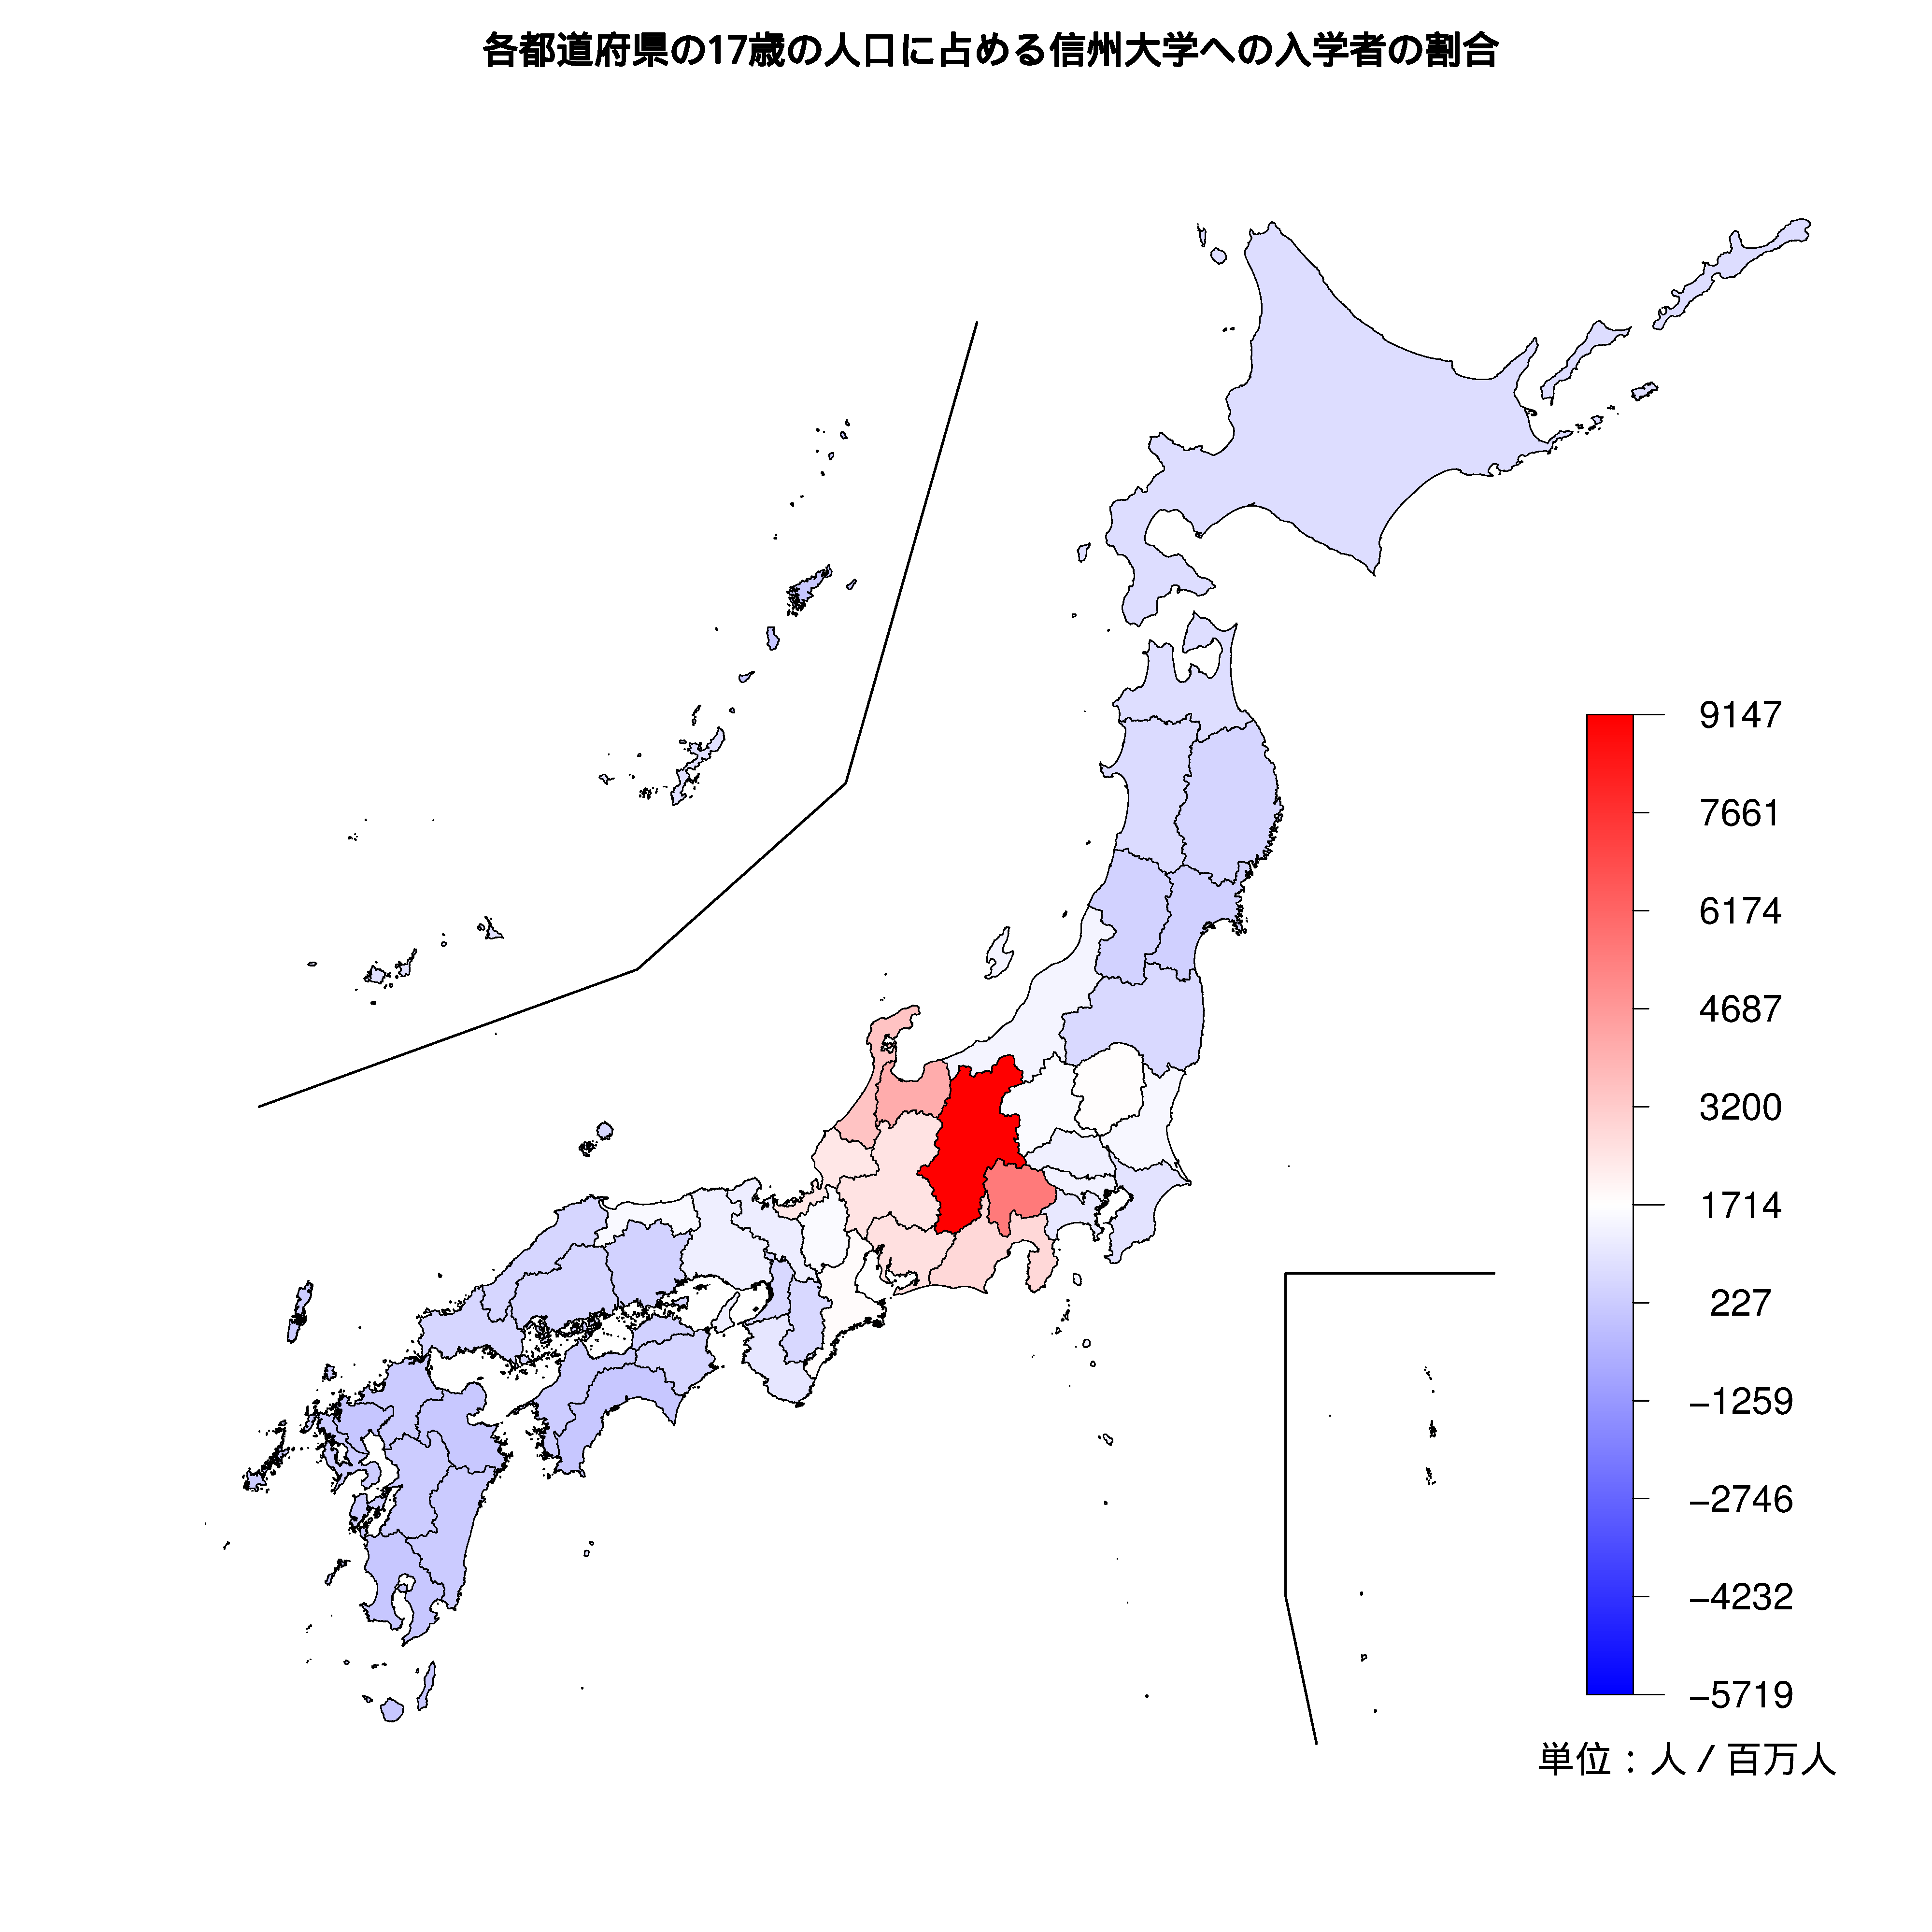 信州大学への入学者が多い都道府県の色分け地図